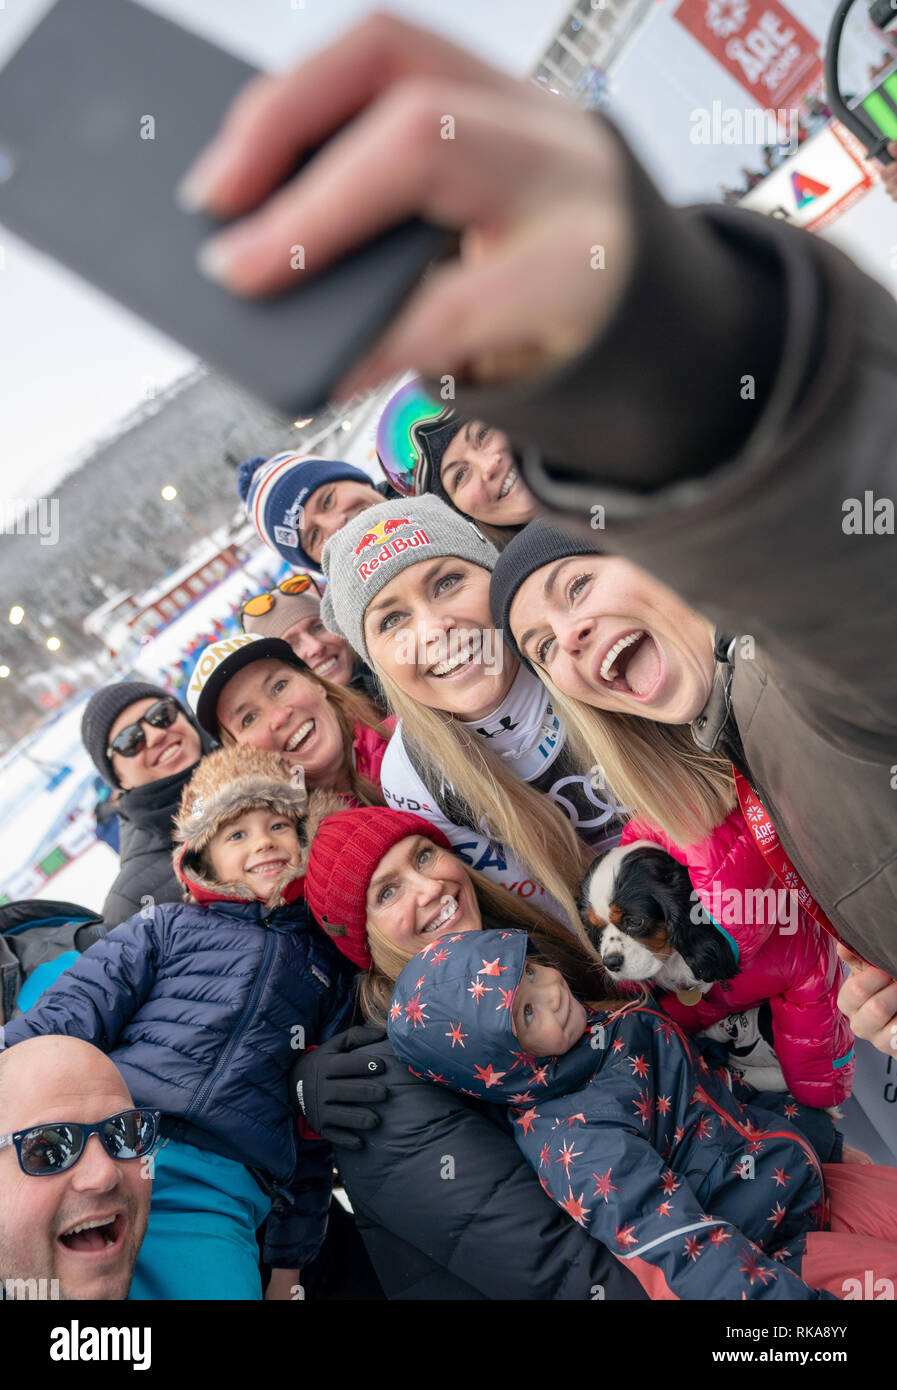 Sind, Schweden. 10 Feb, 2019. Ski Alpin, Weltmeisterschaft, Downhill, Damen: Lindsey Vonn aus den USA stellt nach dem Rennen mit ihrer Schwester Karin Kildow (r) für eine selfie. Quelle: Michael Kappeler/dpa/Alamy leben Nachrichten Stockfoto